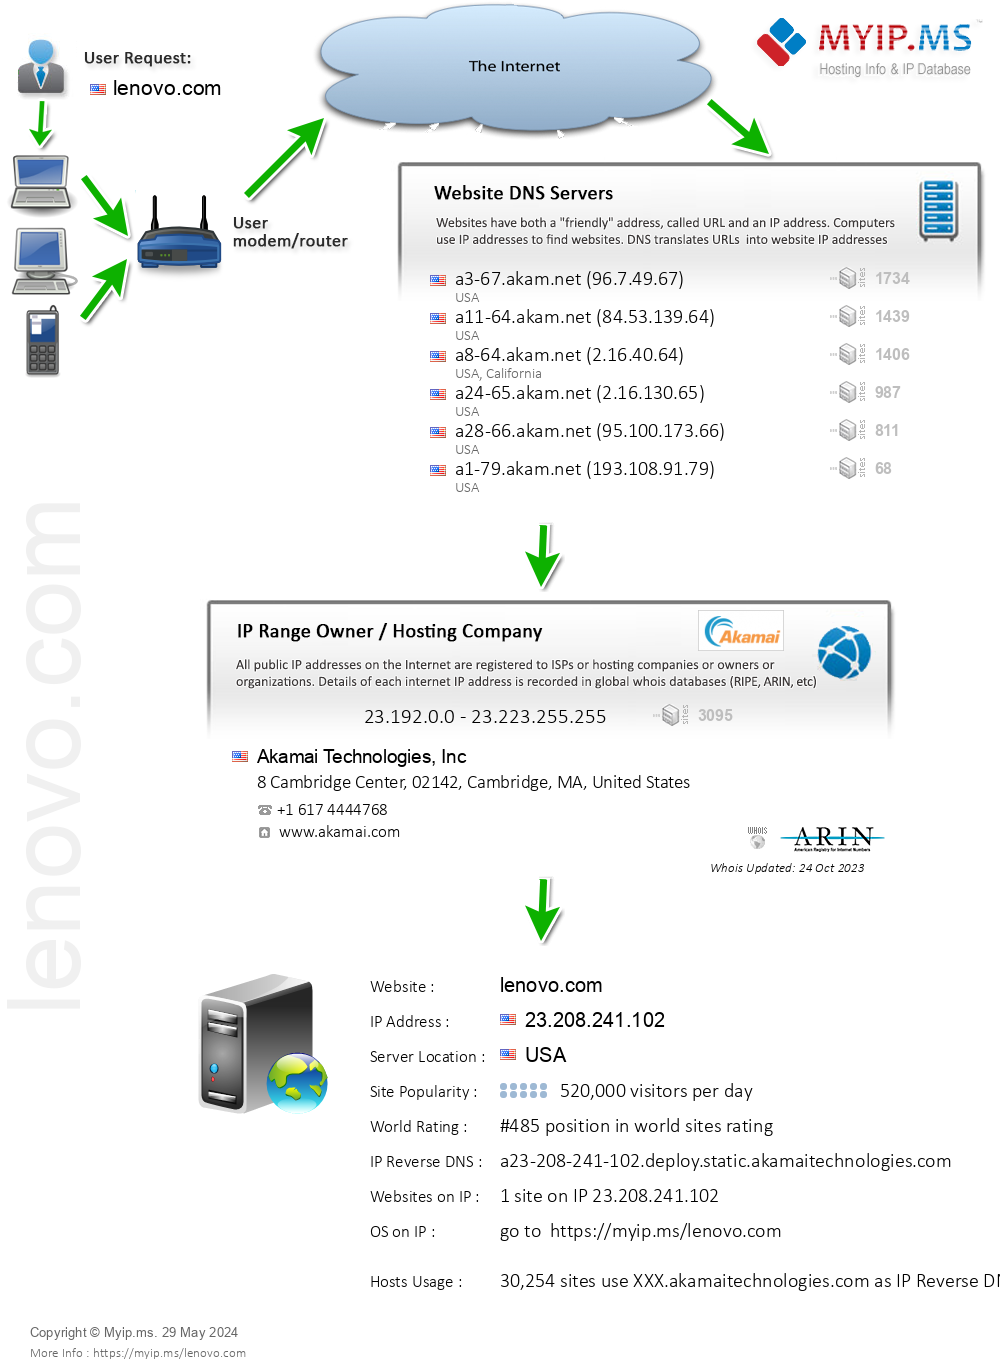 Lenovo.com - Website Hosting Visual IP Diagram